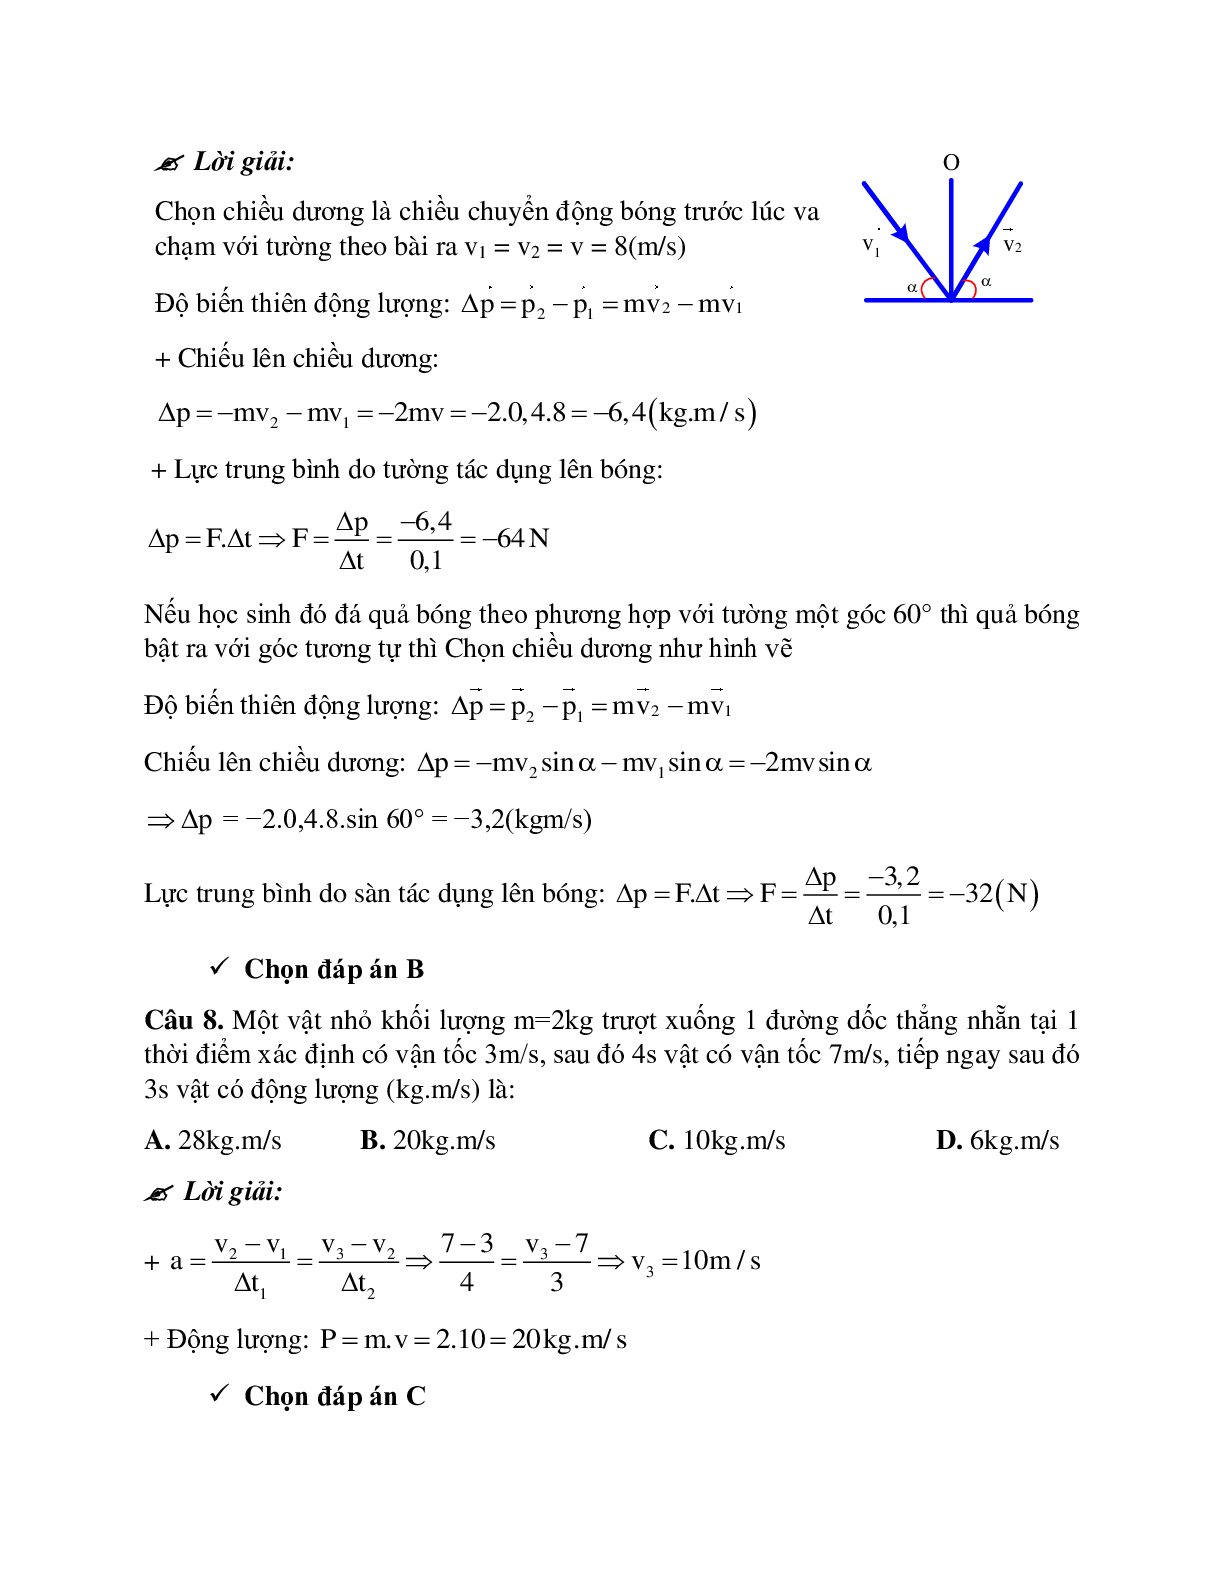 Phương pháp giải và bài tập về Xác định tổng động lượng, độ biến thiên động lượng và lực tác dụng (trang 9)